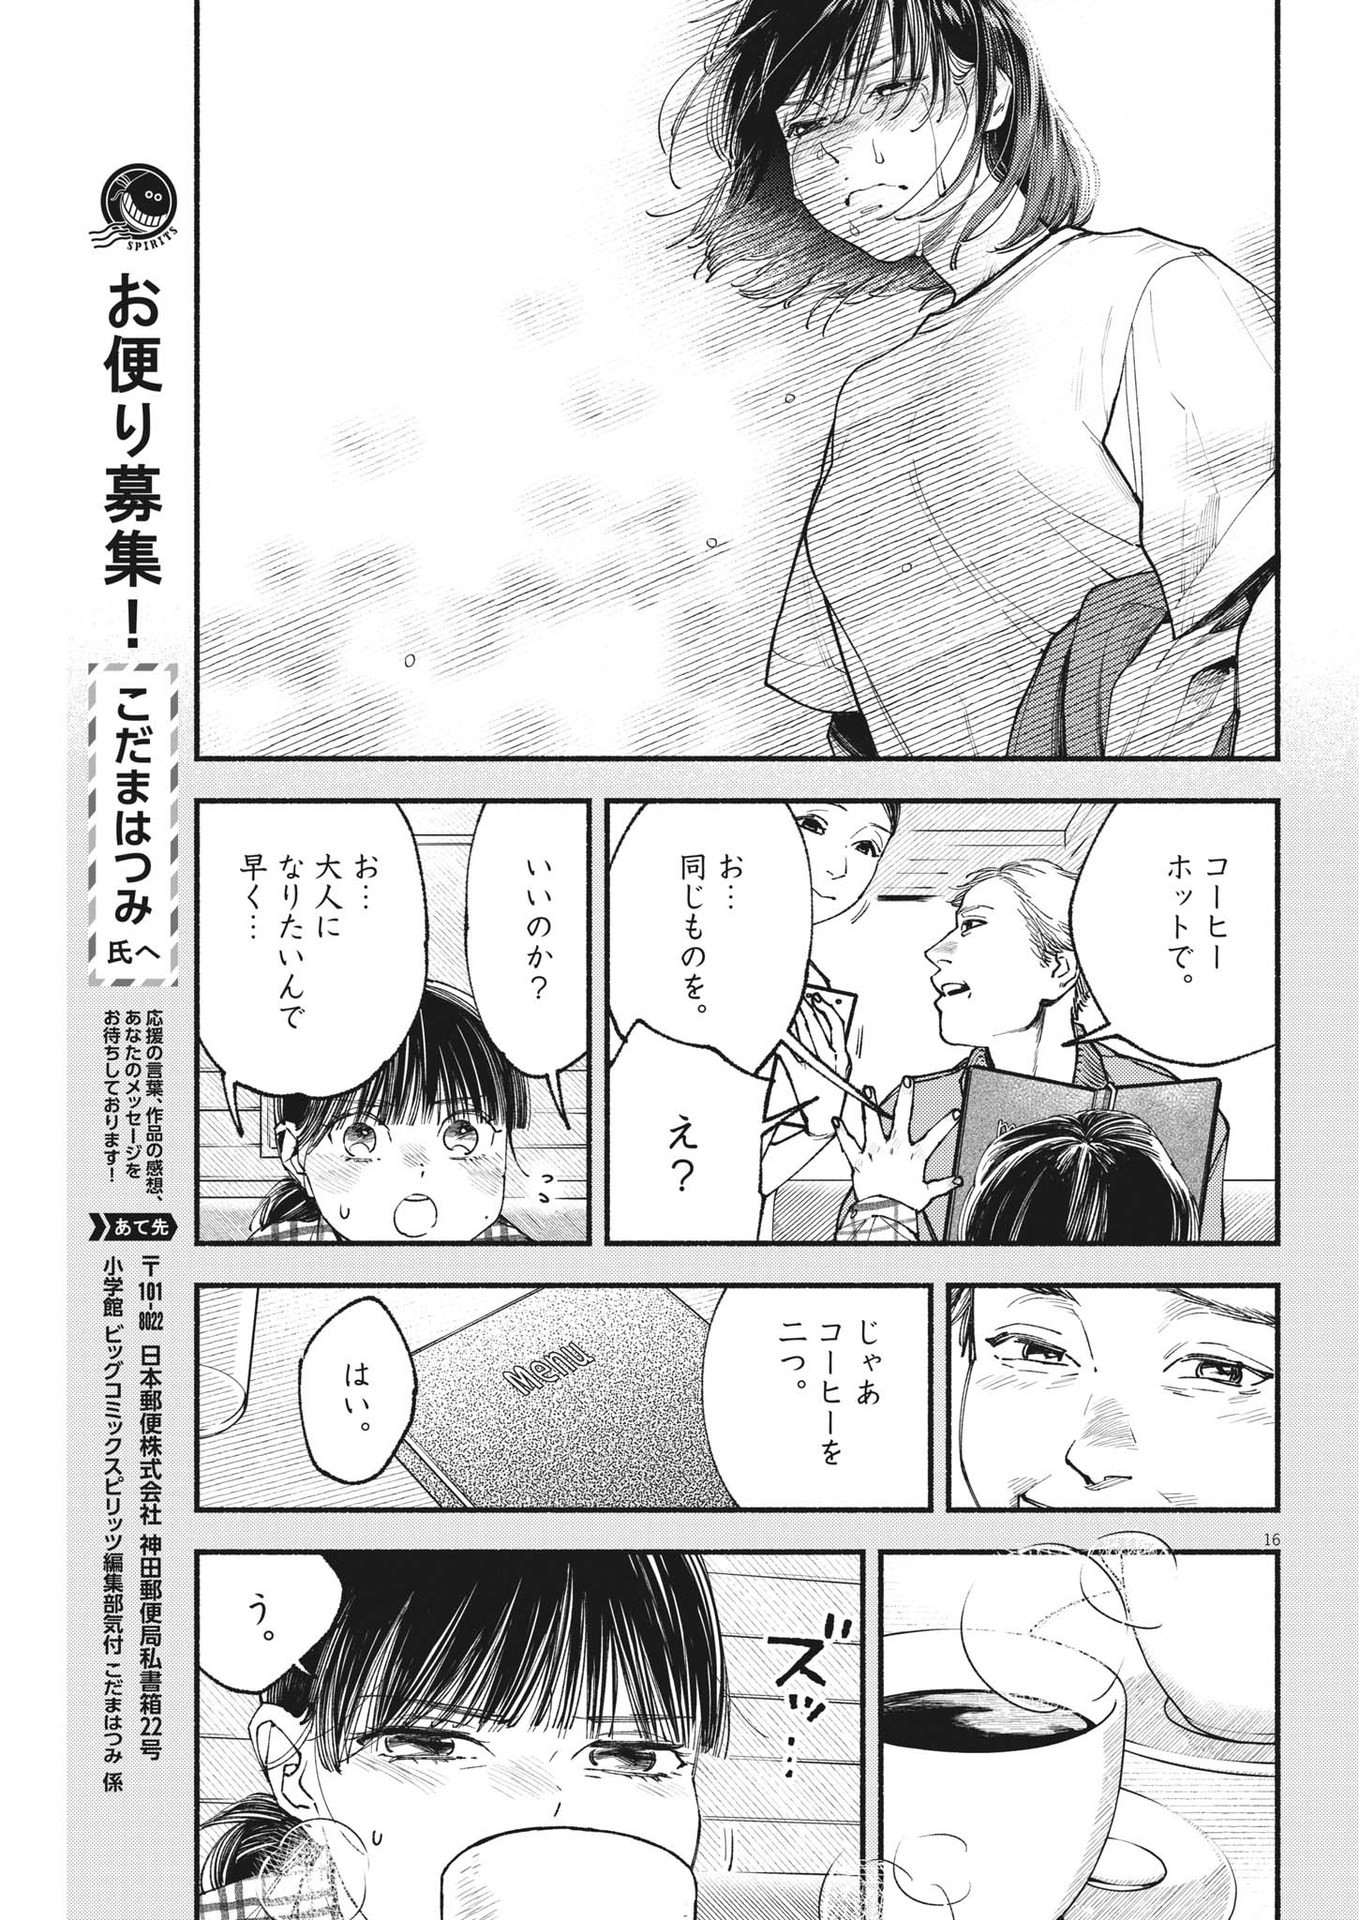 Konoyo wa Tatakau Kachi ga Aru  - Chapter 18 - Page 16